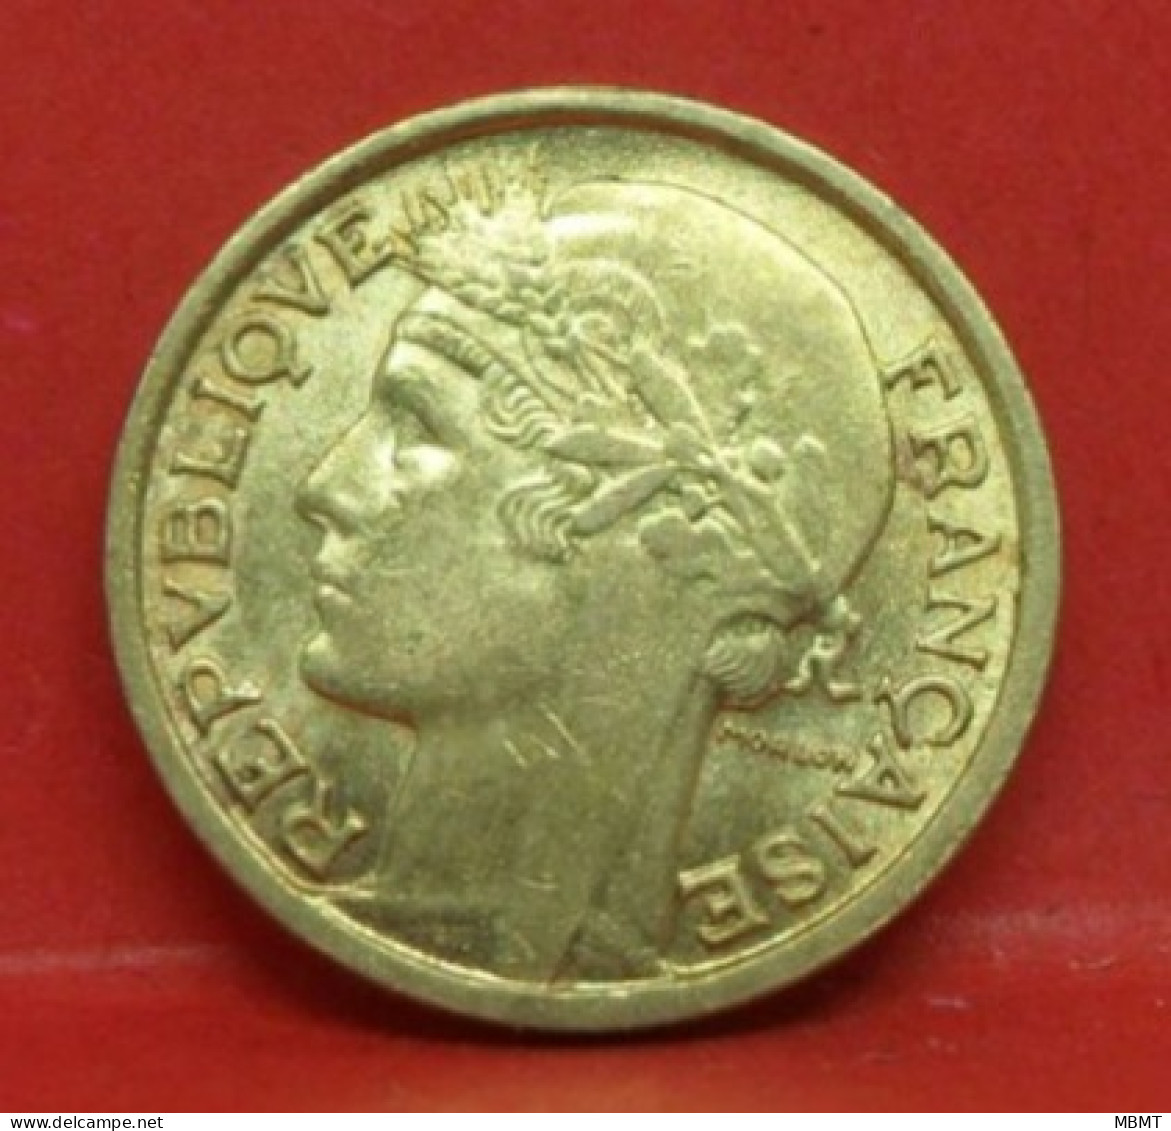 50 Centimes Morlon 1941 - SUP - Pièce Monnaie France - Article N°545 - 50 Centimes